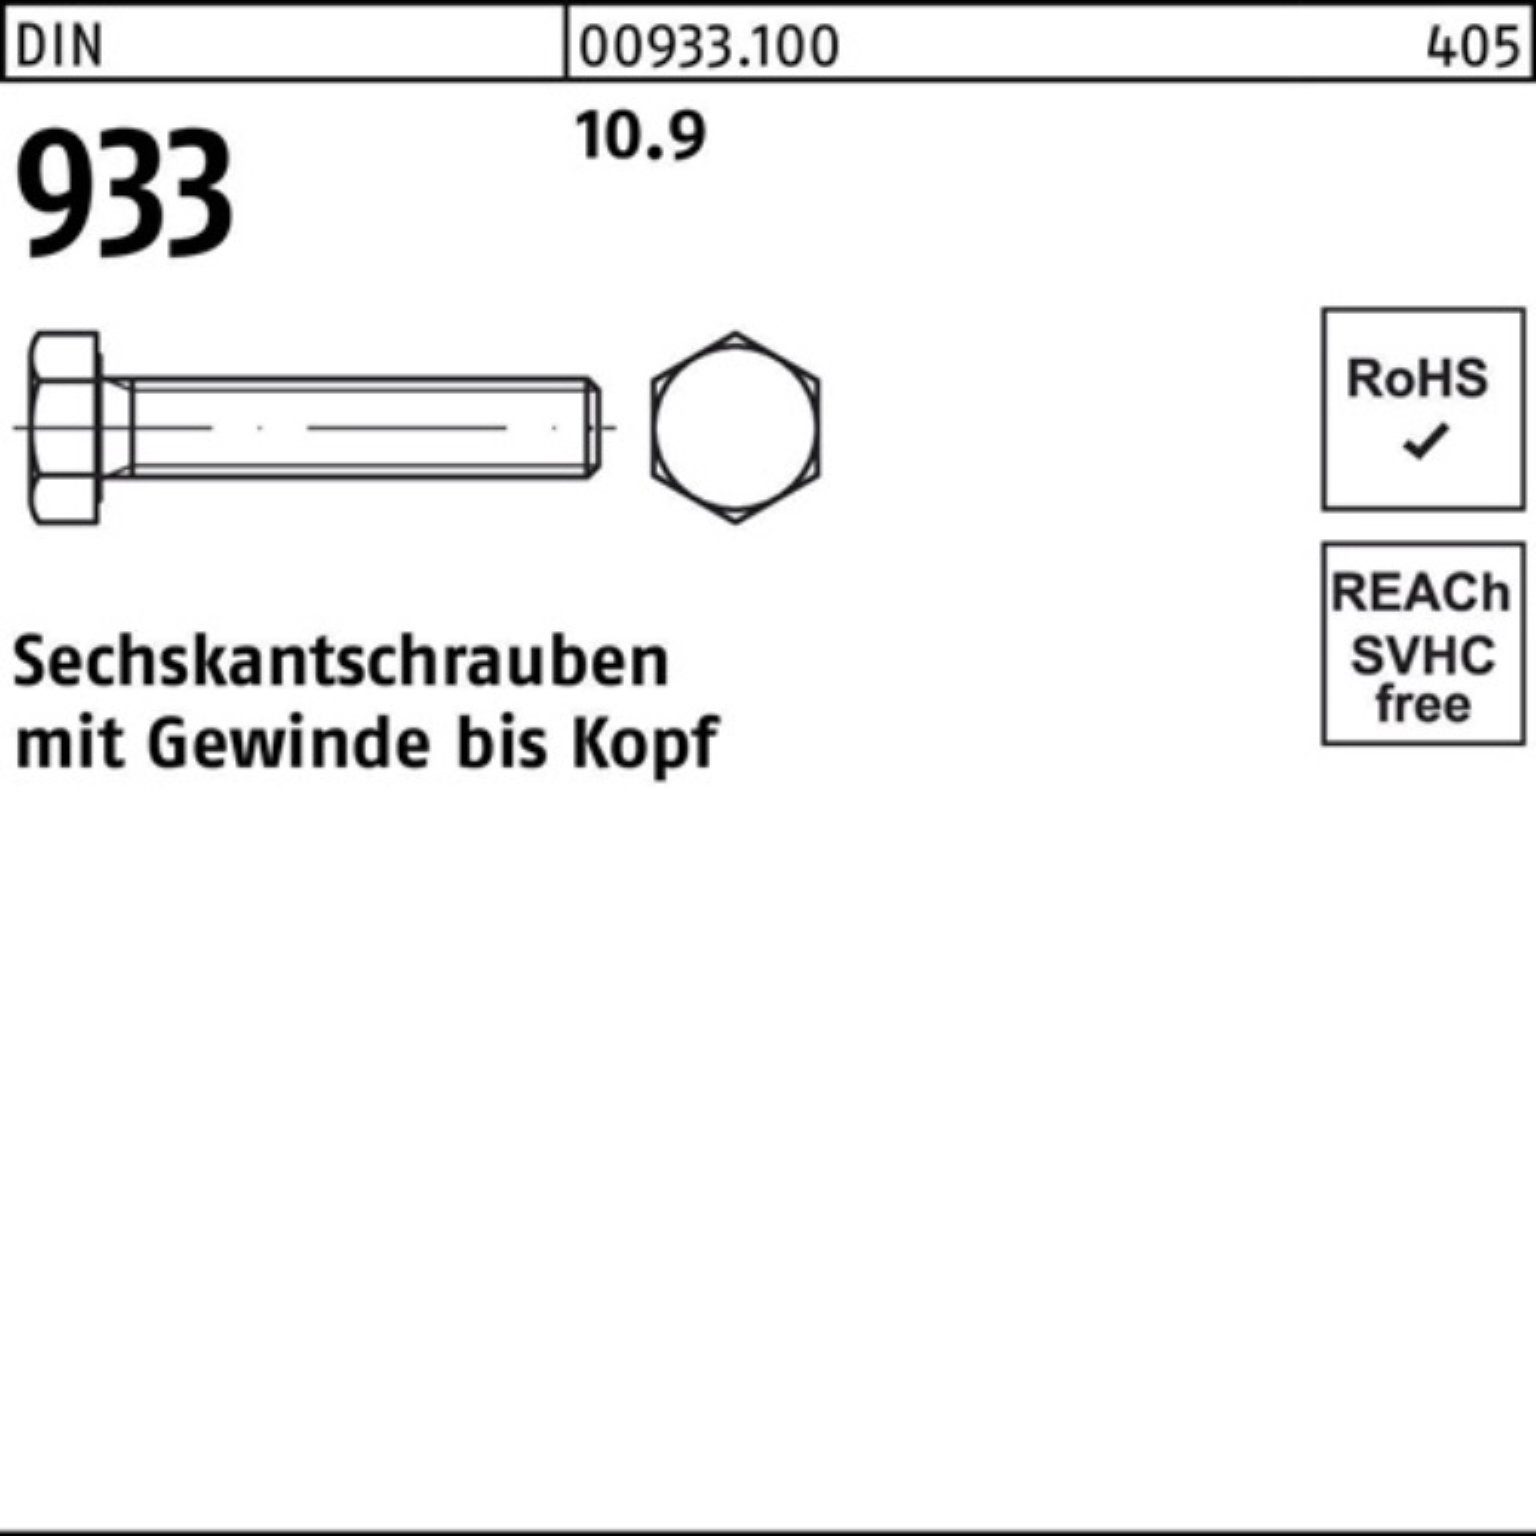 Renner Reyher Sechskantschraube 100er Pack 933 VG DIN Stück 100 25 Sechskantschraube DIN M6x 10.9 933